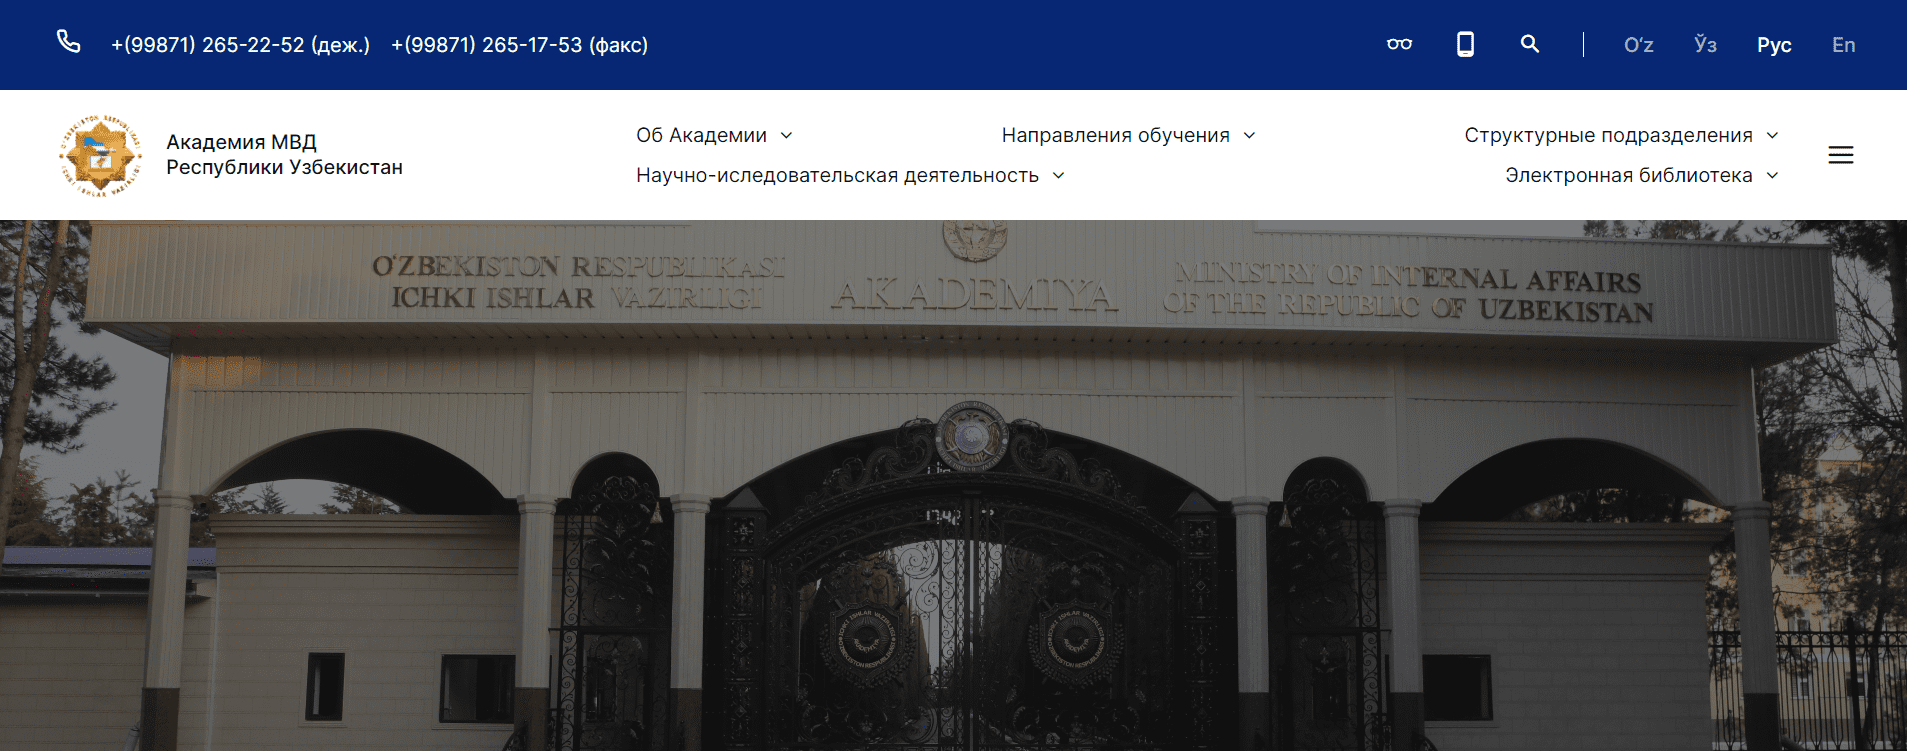 Академия МВД Республики Узбекистан (akadmvd.uz) - официальный сайт